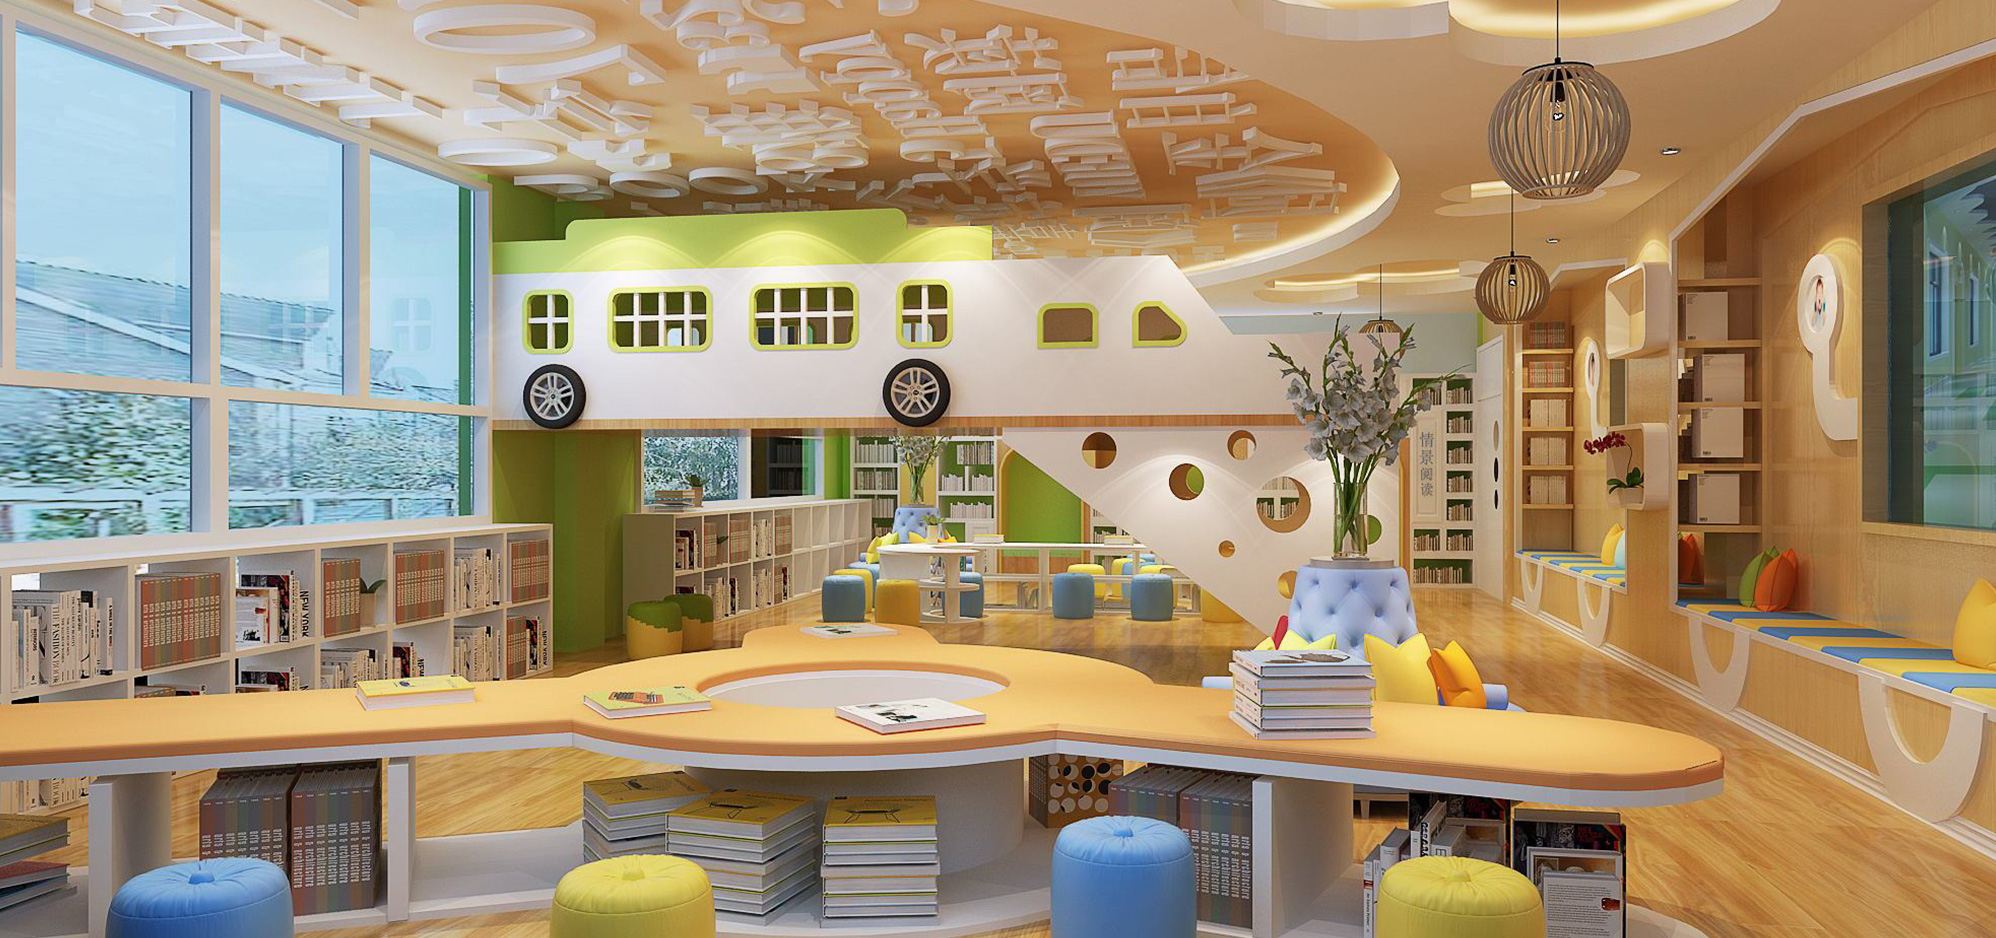 如何判断幼儿园空间设计公司的专业程度